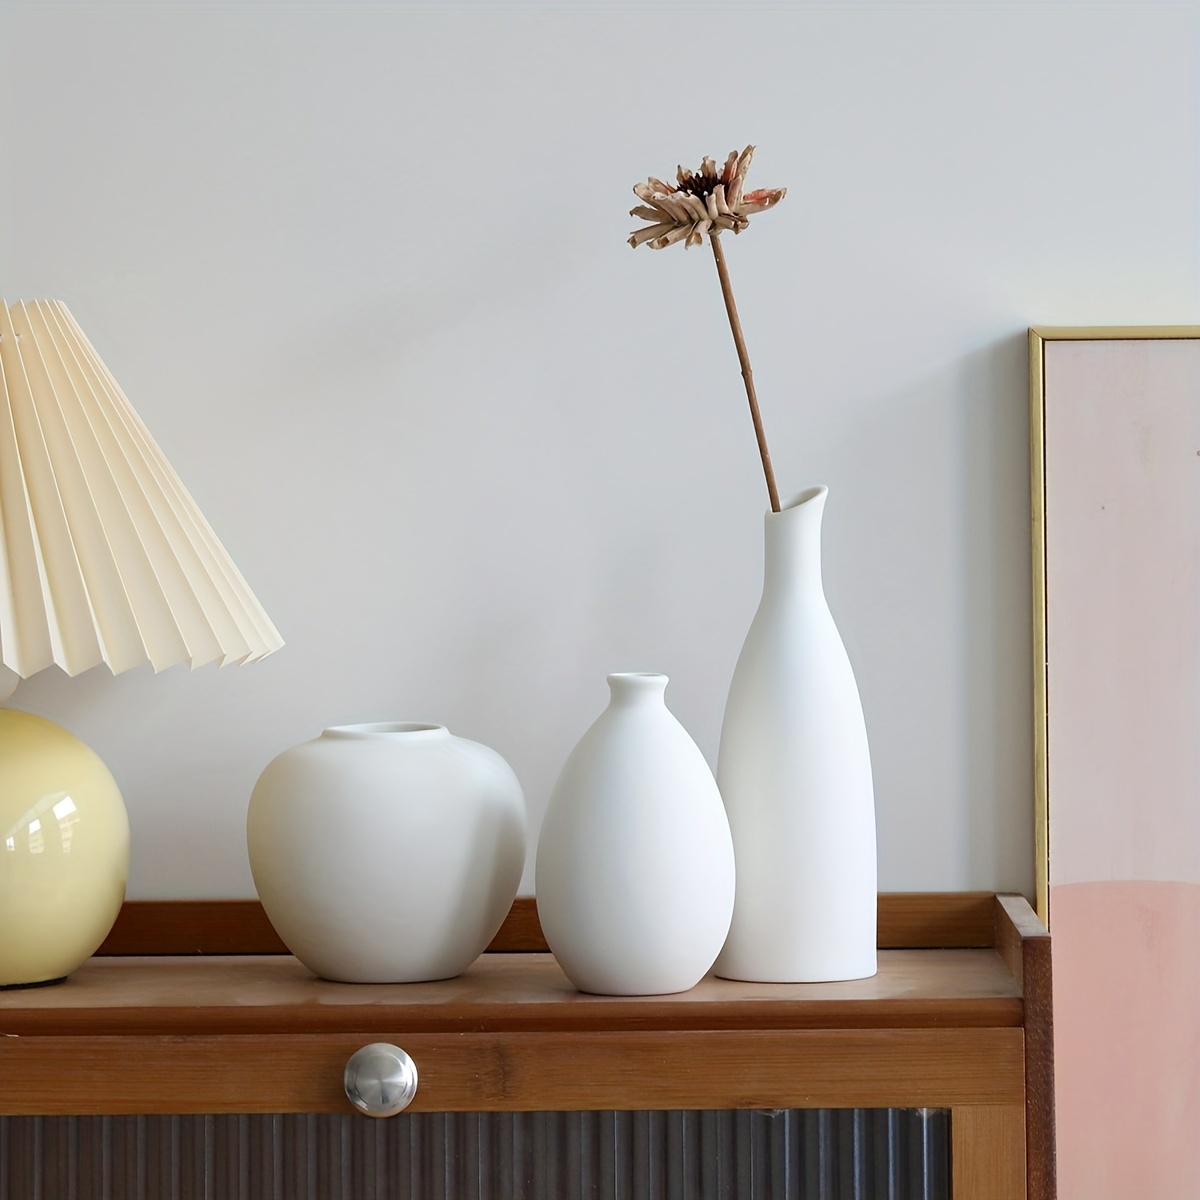 Jarrón de cerámica beige para decoración del hogar, juego de 3 jarrones de  flores pequeños para granja rústica moderna, jarrón decorativo neutro para